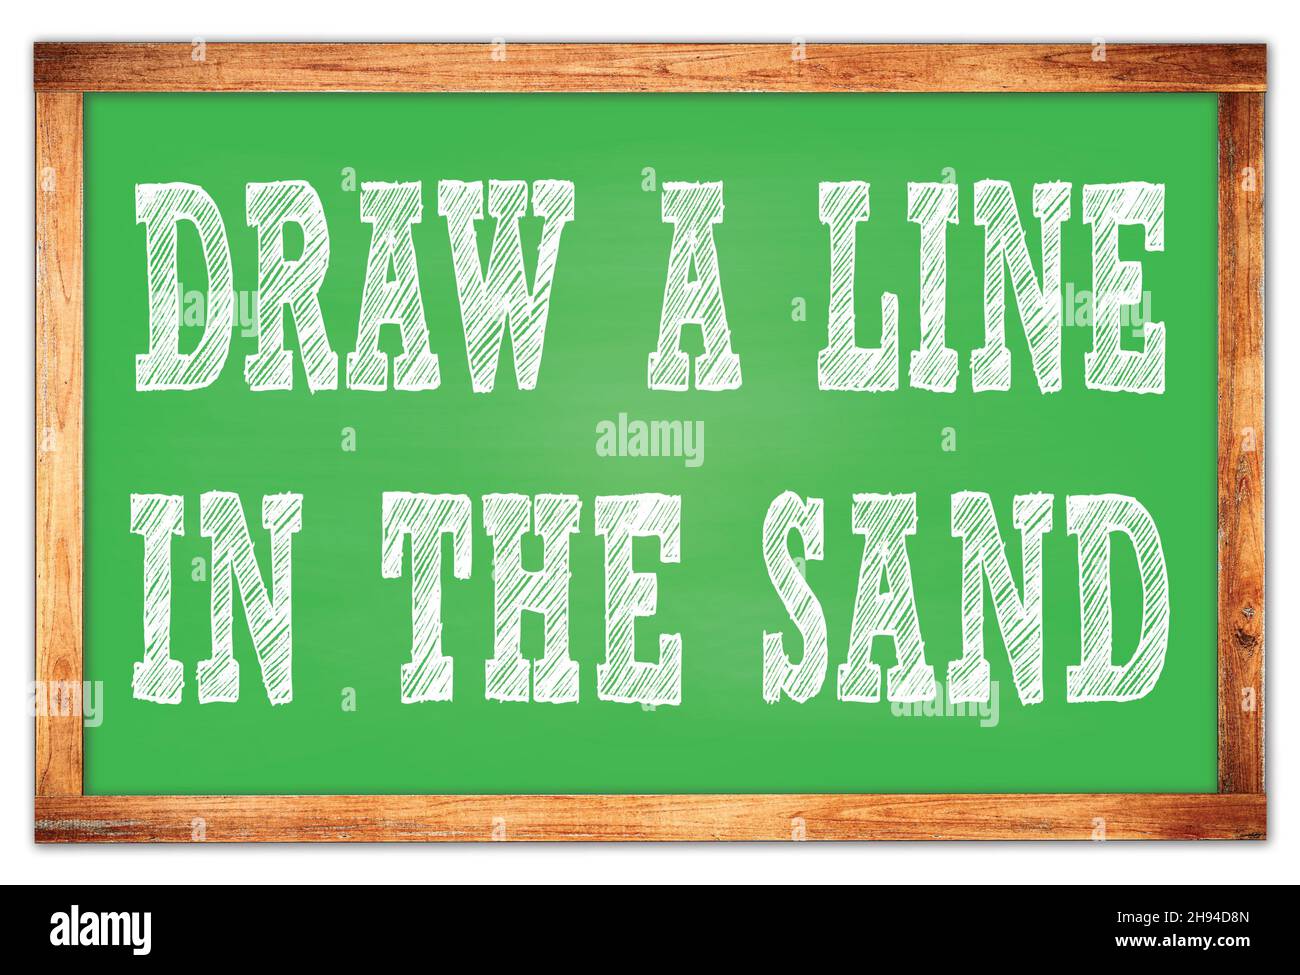 ZEICHNEN Sie Eine LINIE IN DEN SAND auf grünen Holzrahmen Schule Tafel geschrieben Stockfoto